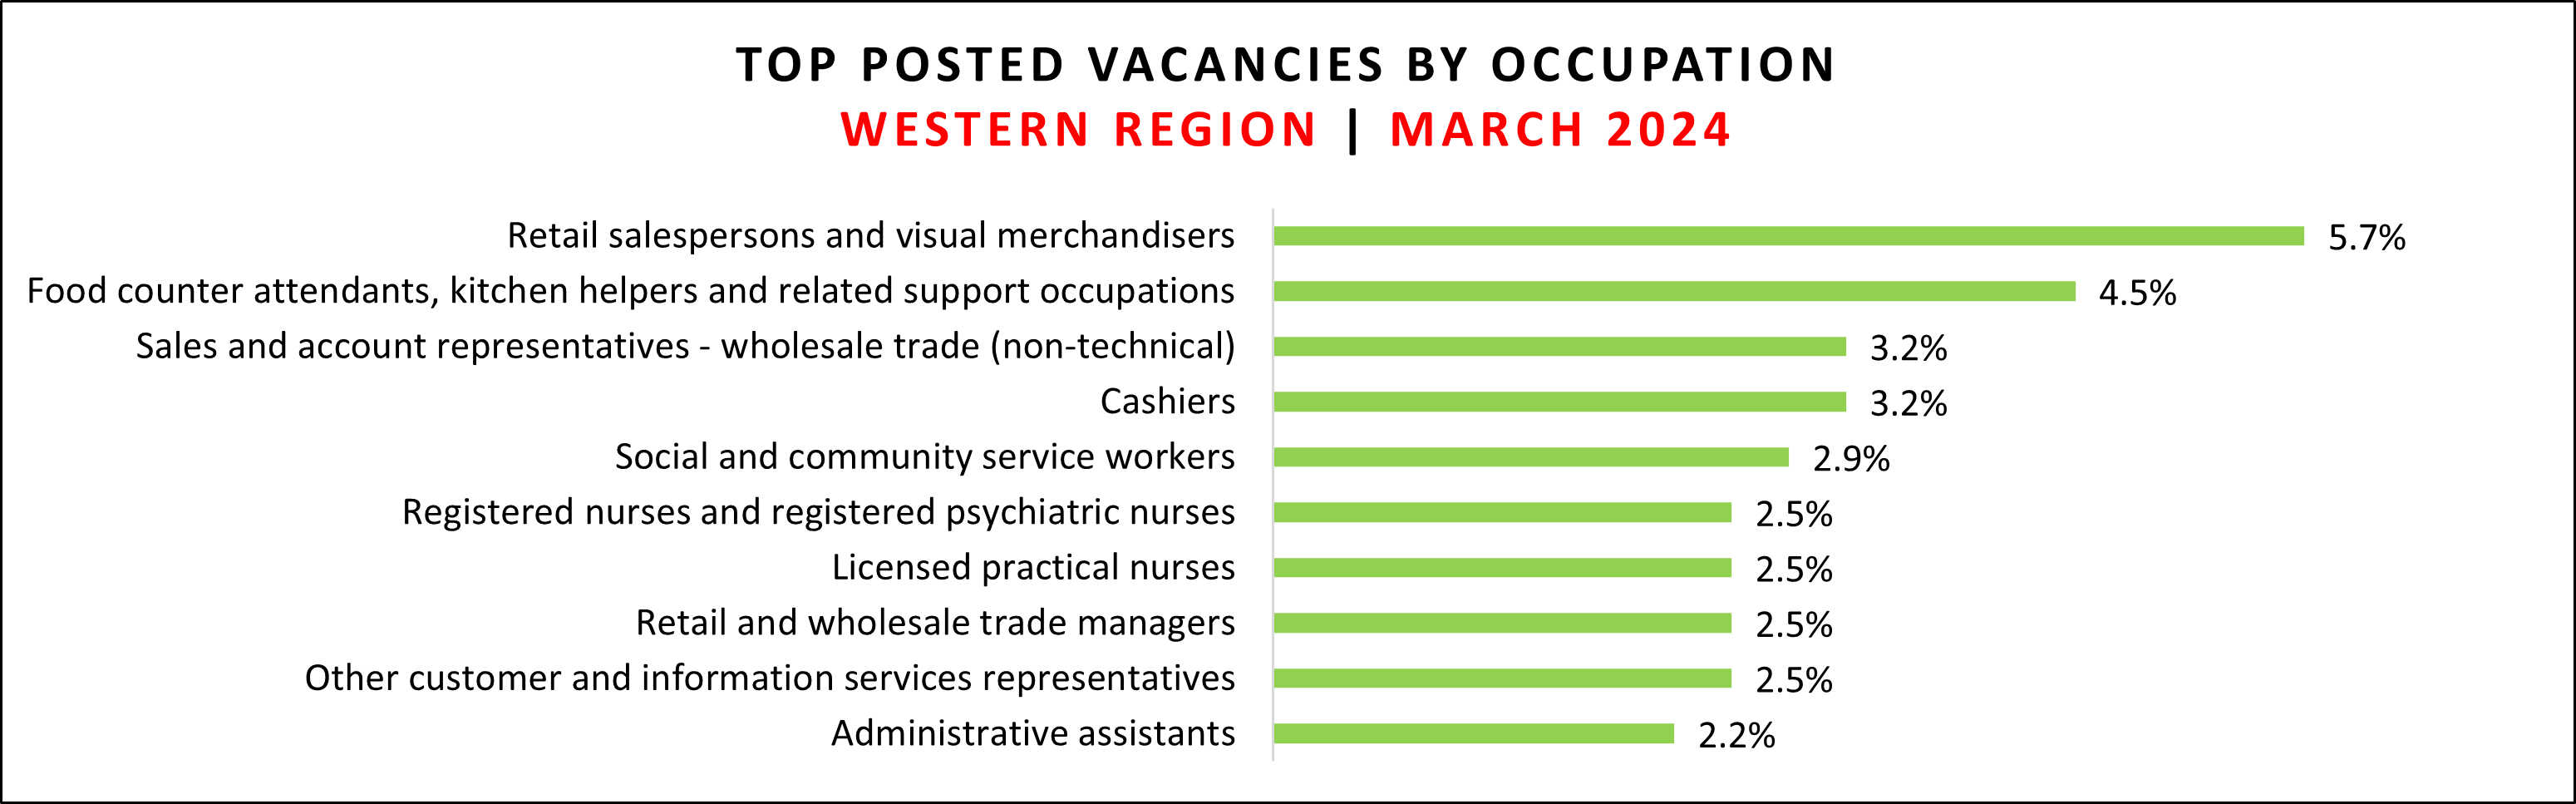 Jab vacancy data for Western region in March 2024.